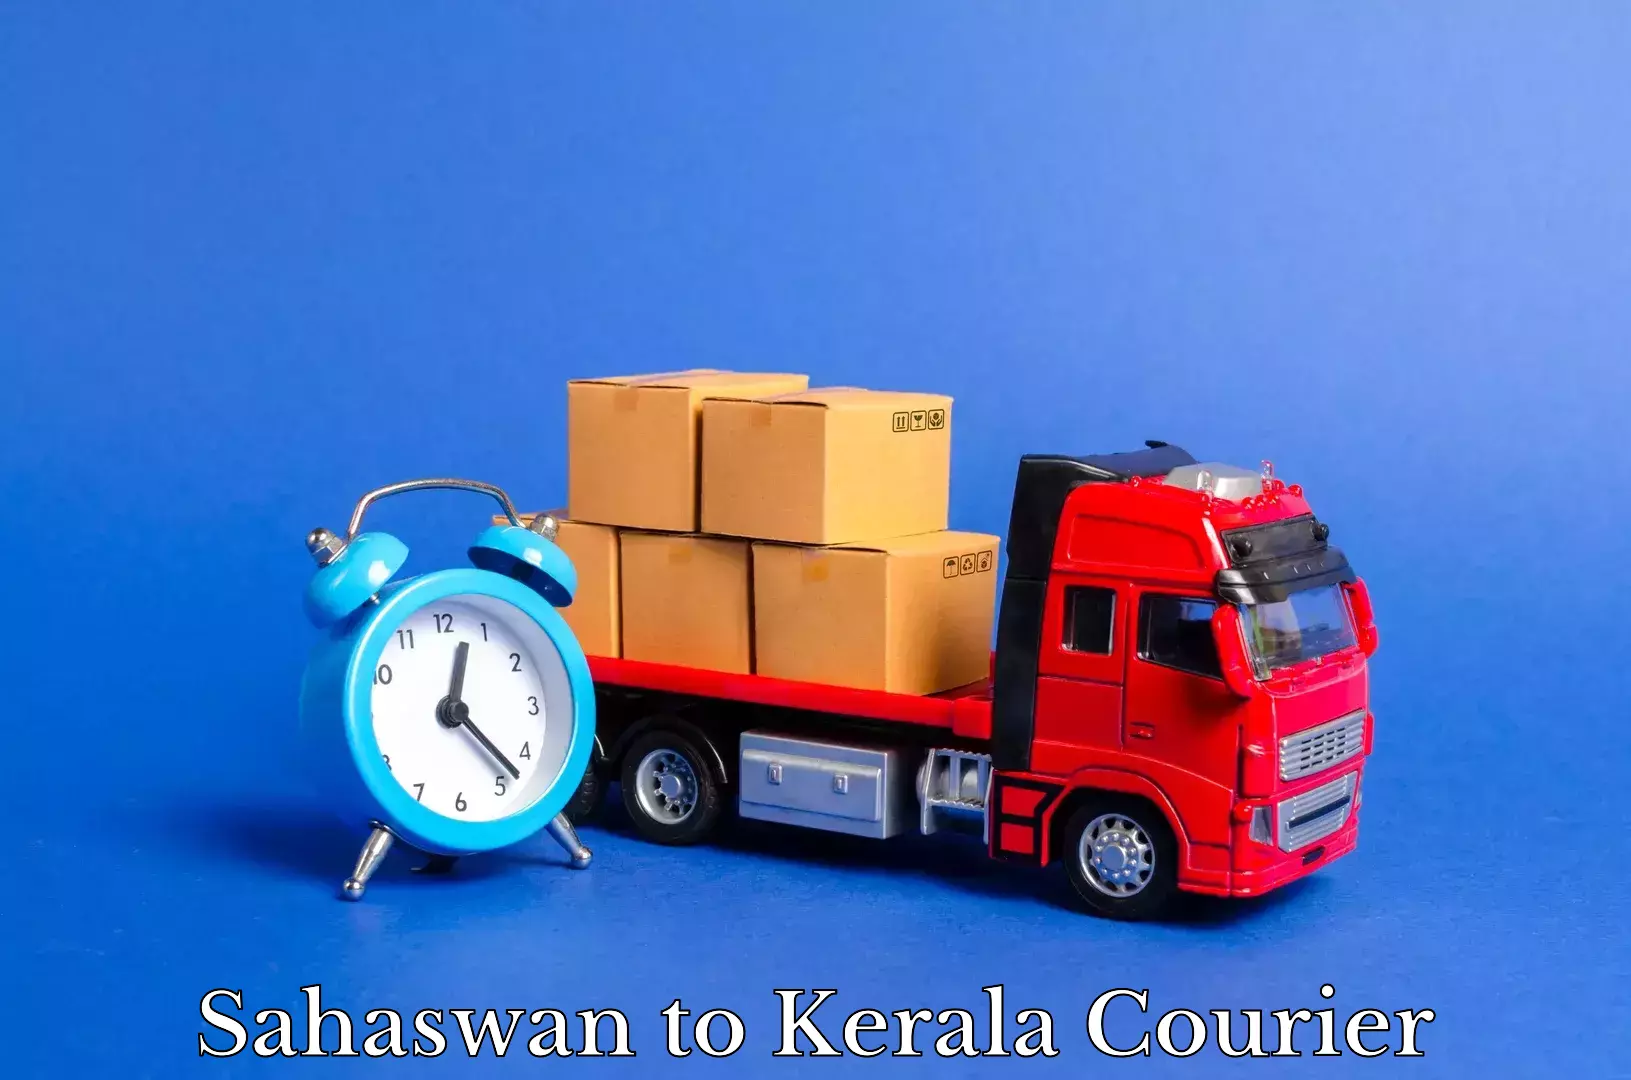 Furniture moving experts Sahaswan to Kozhikode